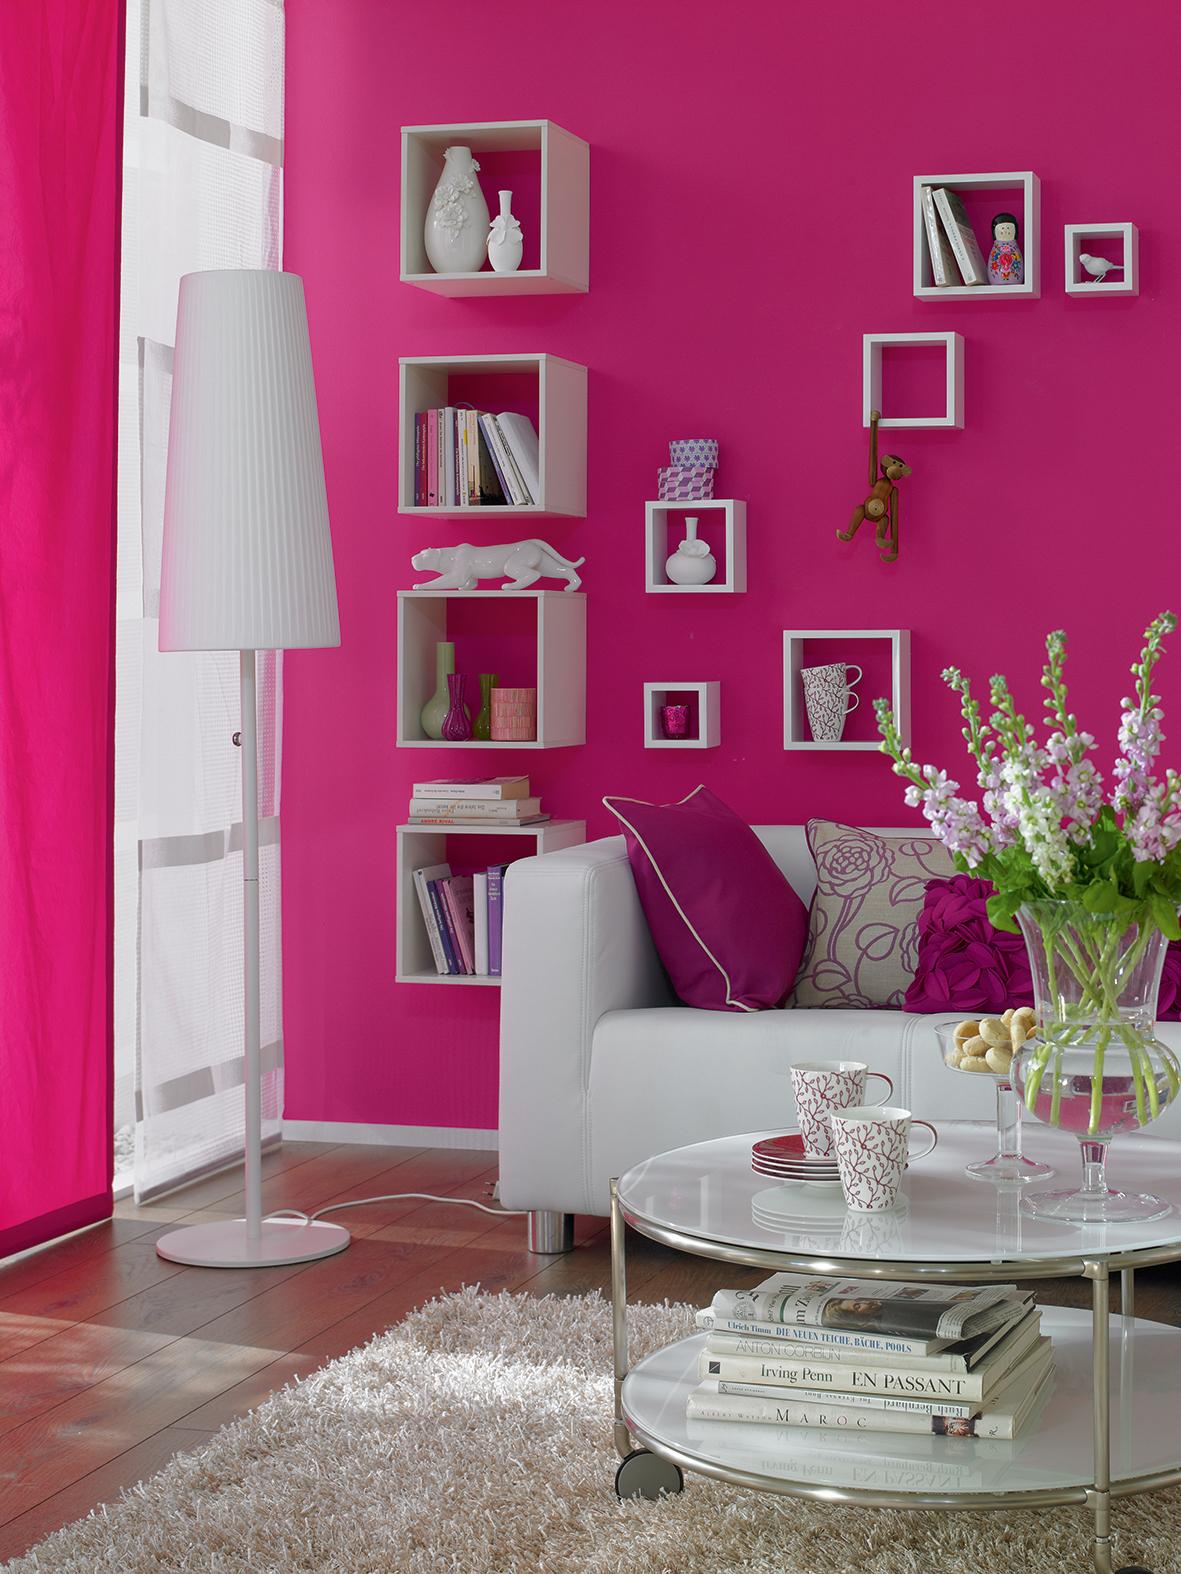 Orchidee, SCHÖNER WOHNEN-Trendfarbe #wandfarbe #regal #wandgestaltung #stehlampe #sofa #pinkewandfarbe #schönerwohnenfarberosa